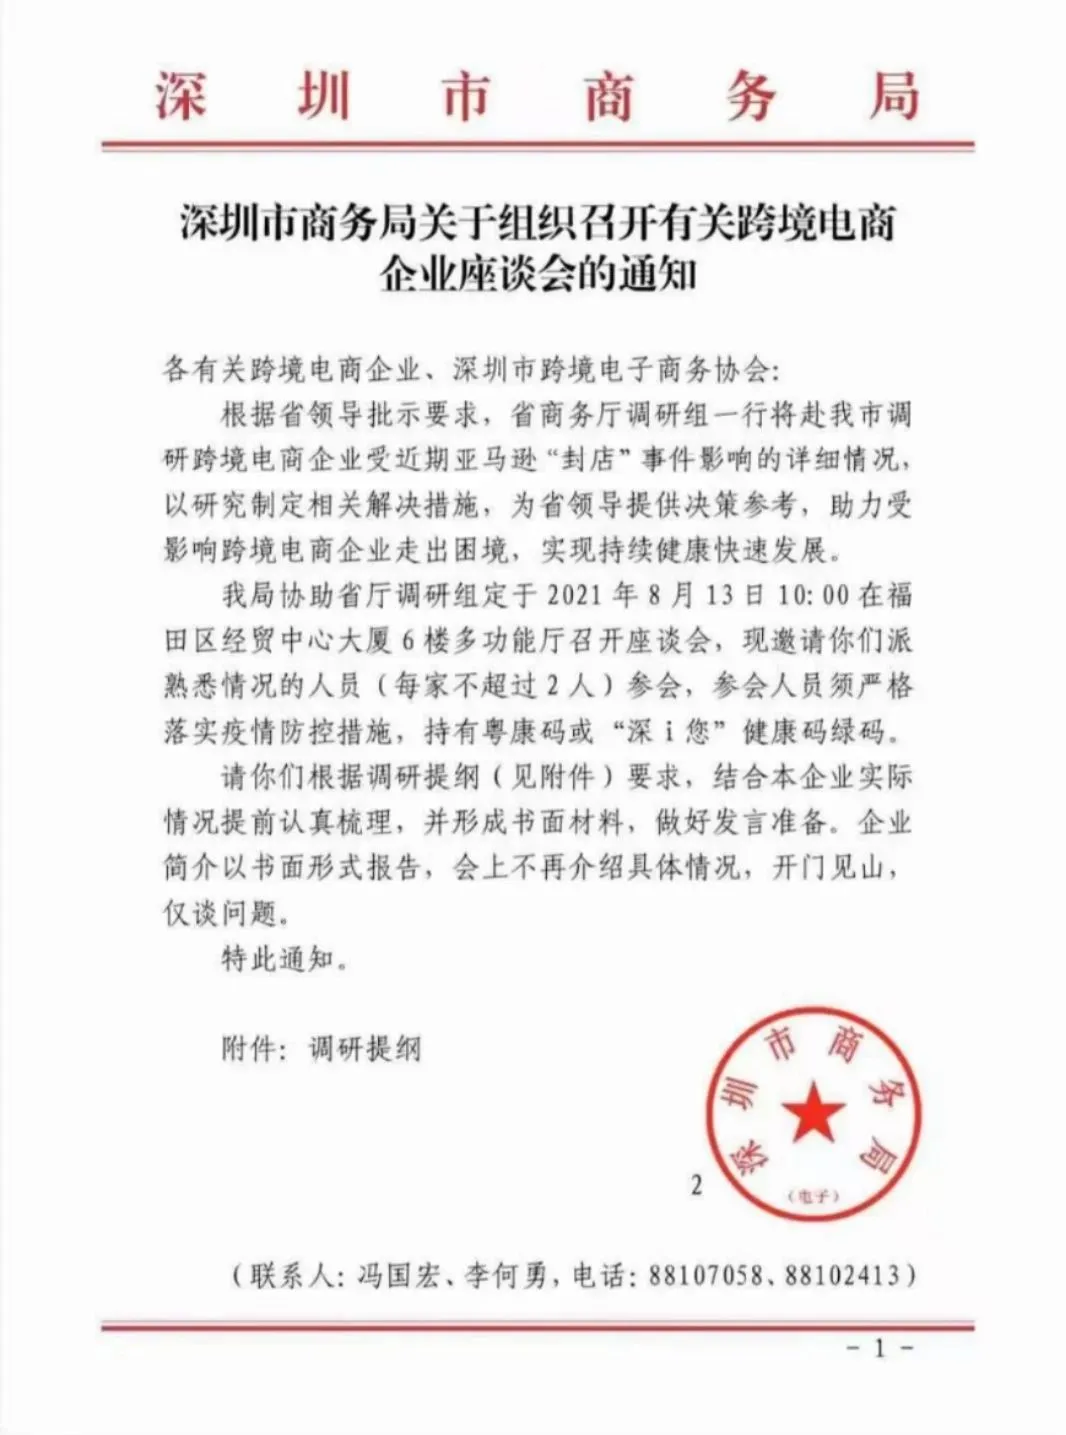 深圳市商务局将召开座谈会，调研亚马逊“封店”事件